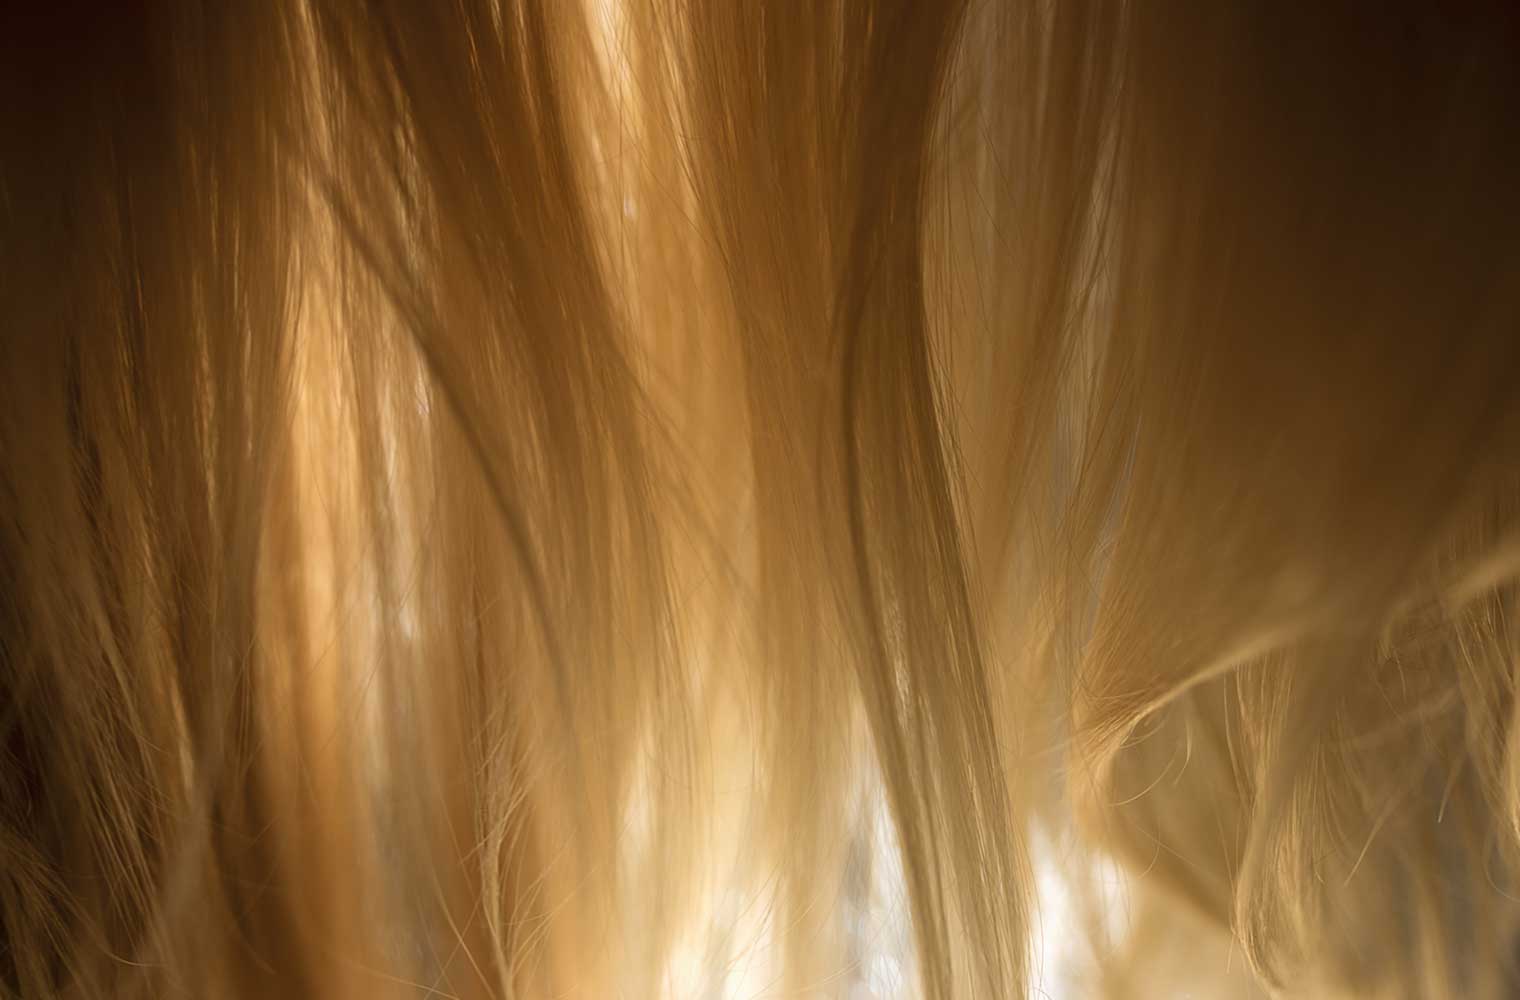 Das Foto zeigt den Ausschnitt von Haaren eines Mädchens von hinten.